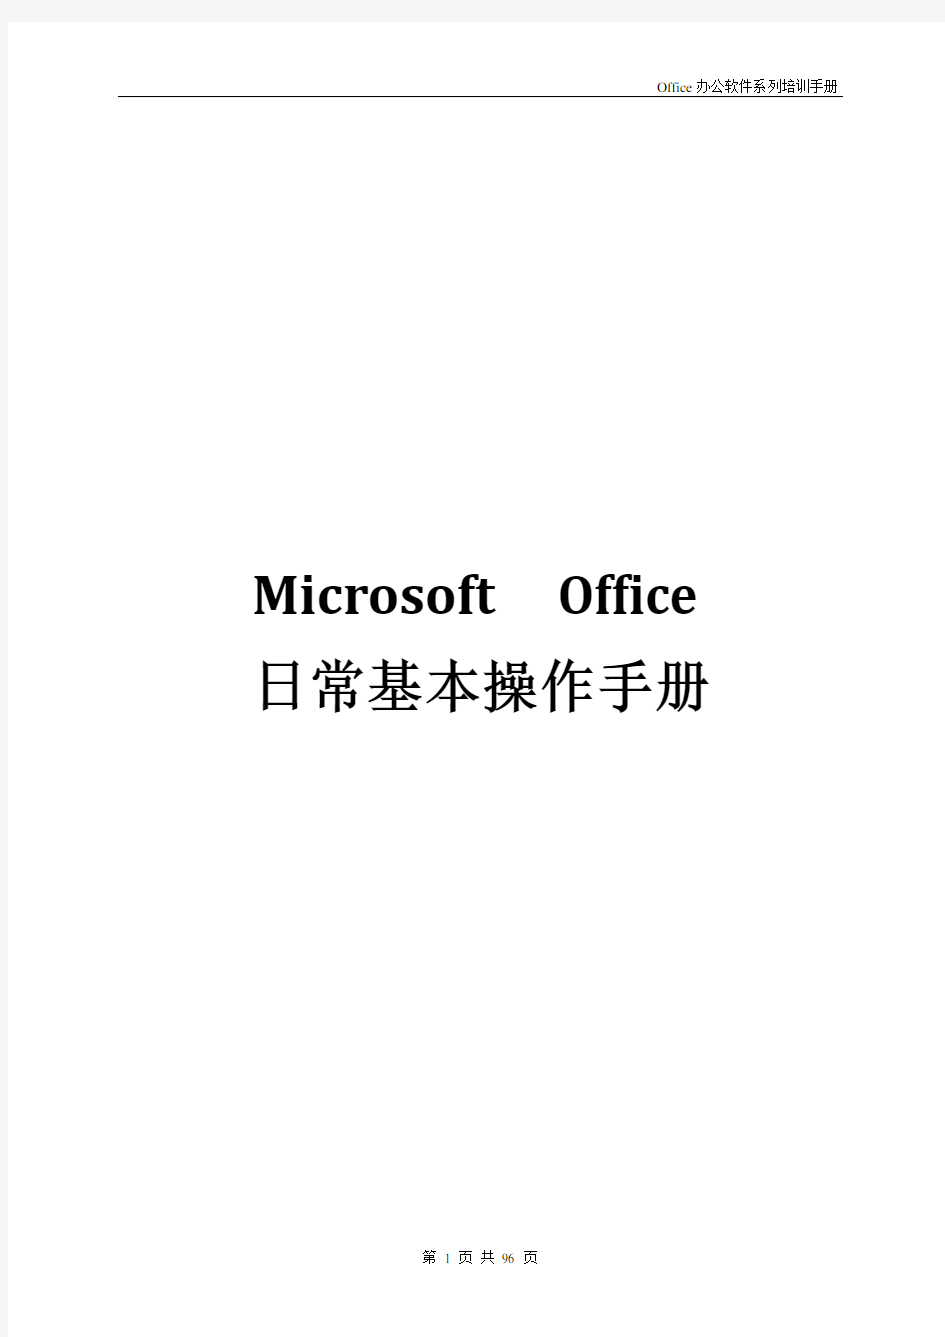 Microsoft  Office日常基本操作手册